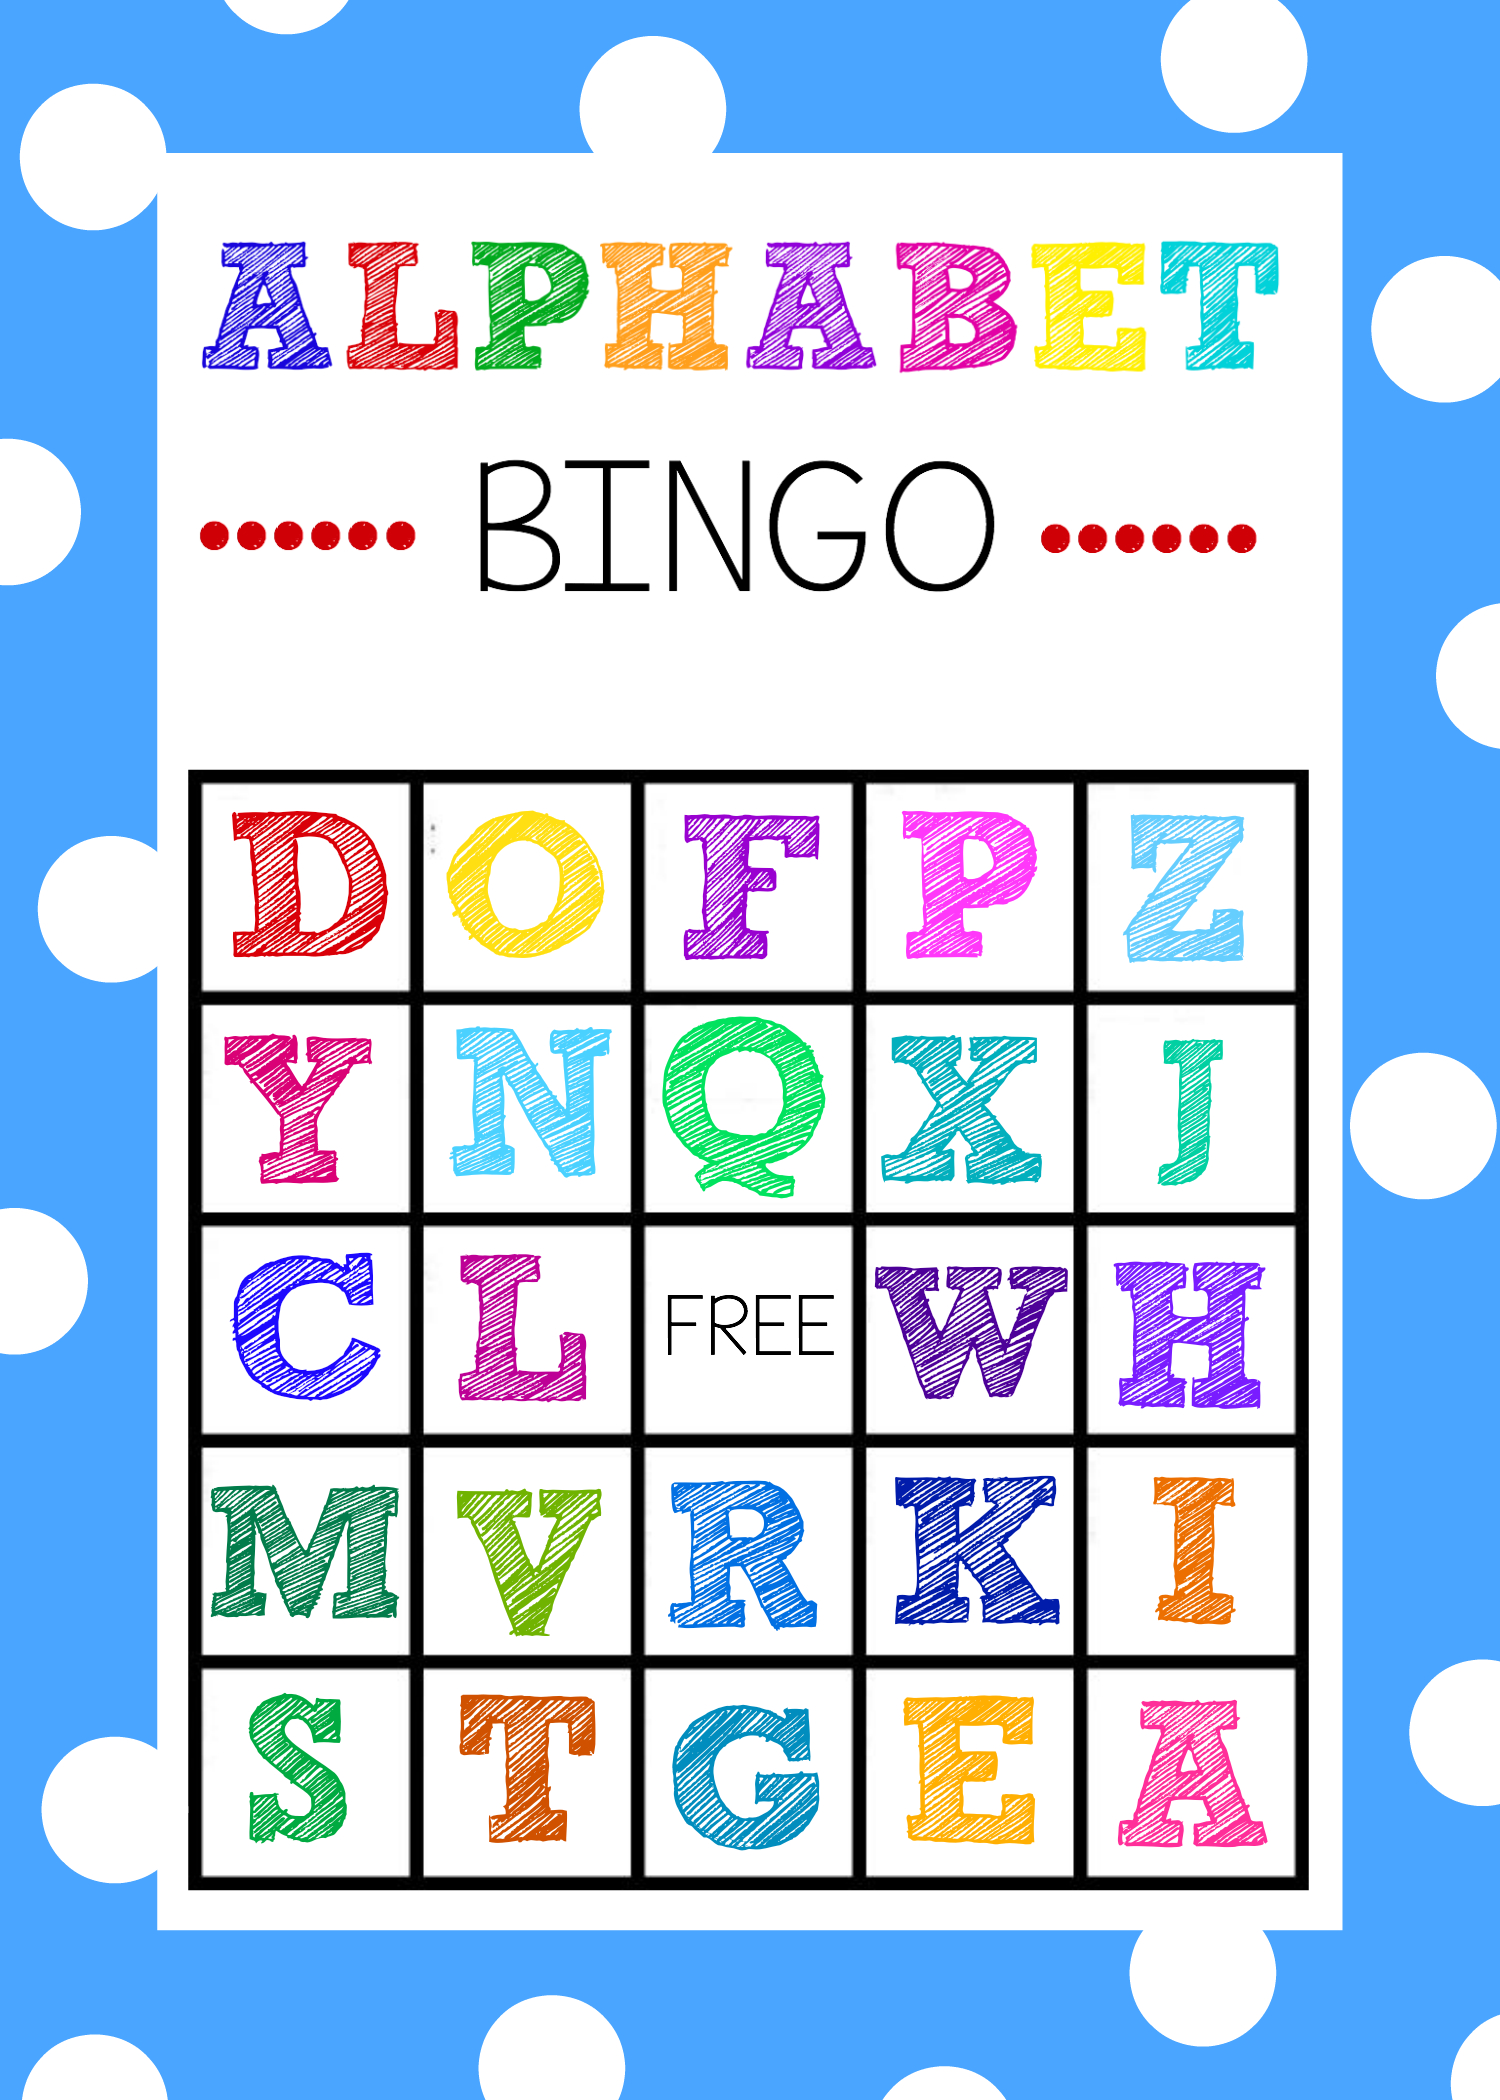 Free Printable Alphabet Bingo Game | Abc Games | Pinterest - Free Printable Alphabet Board Games